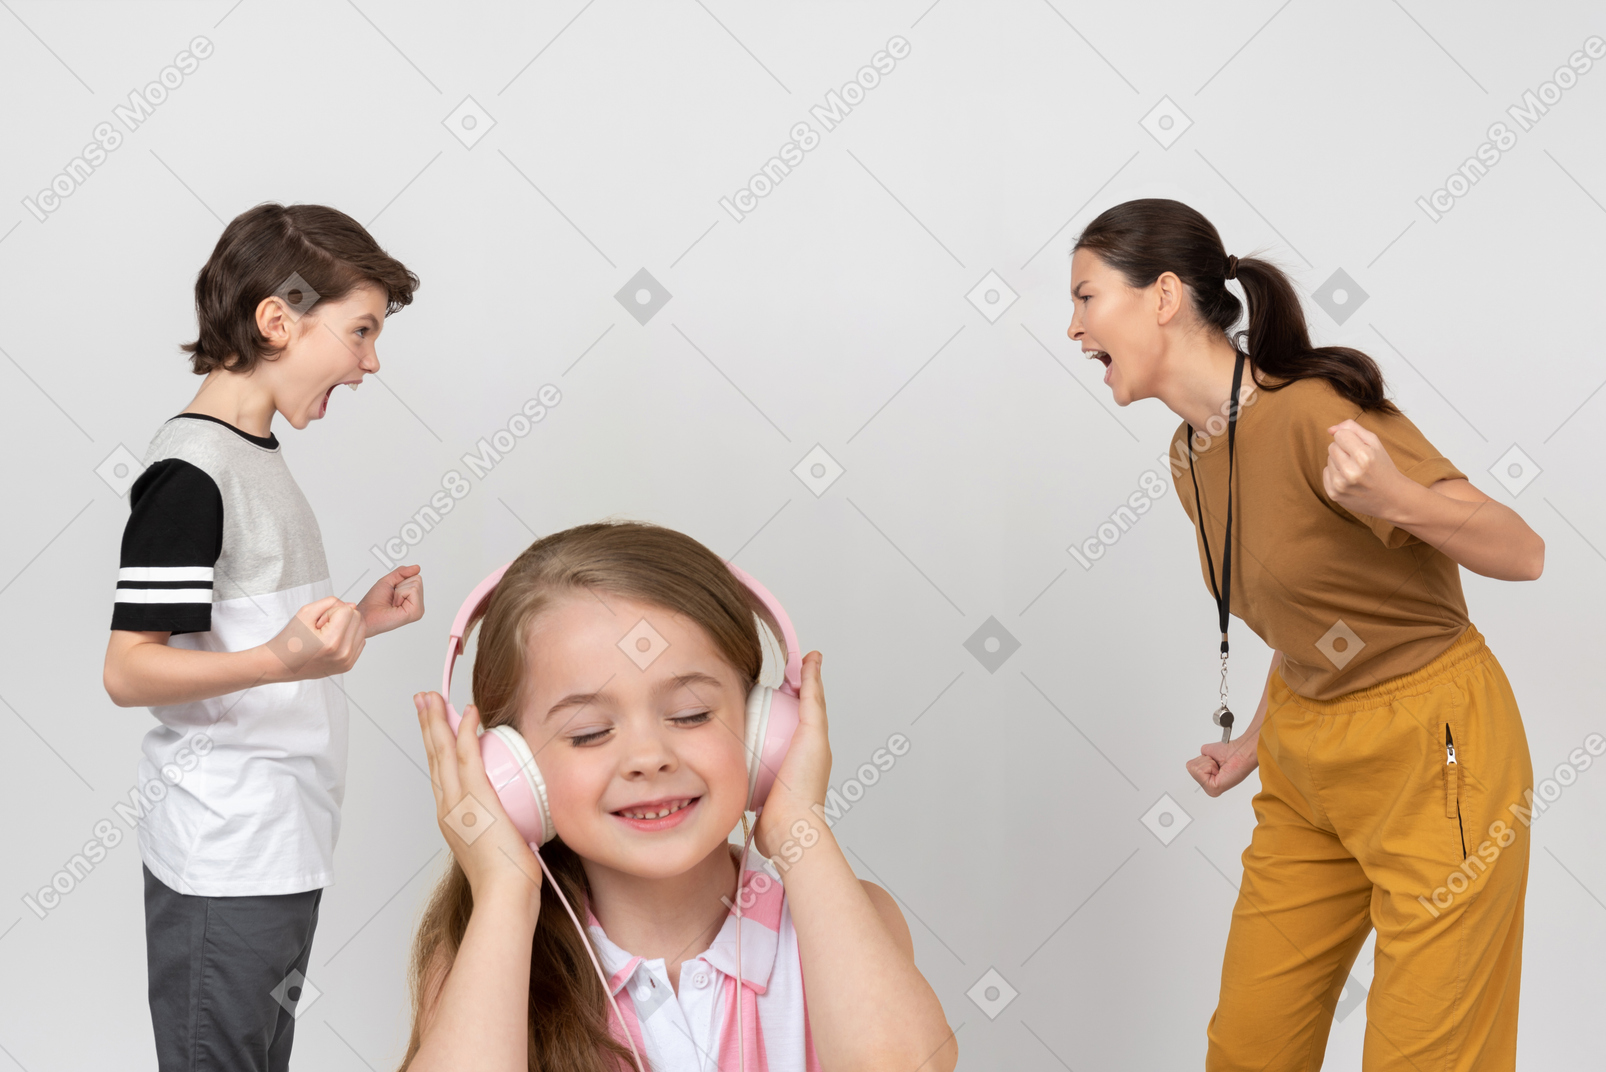 십대 소년과 여성 코치가 서로 소리 지르는 동안 헤드폰에서 음악을 듣고 어린 소녀